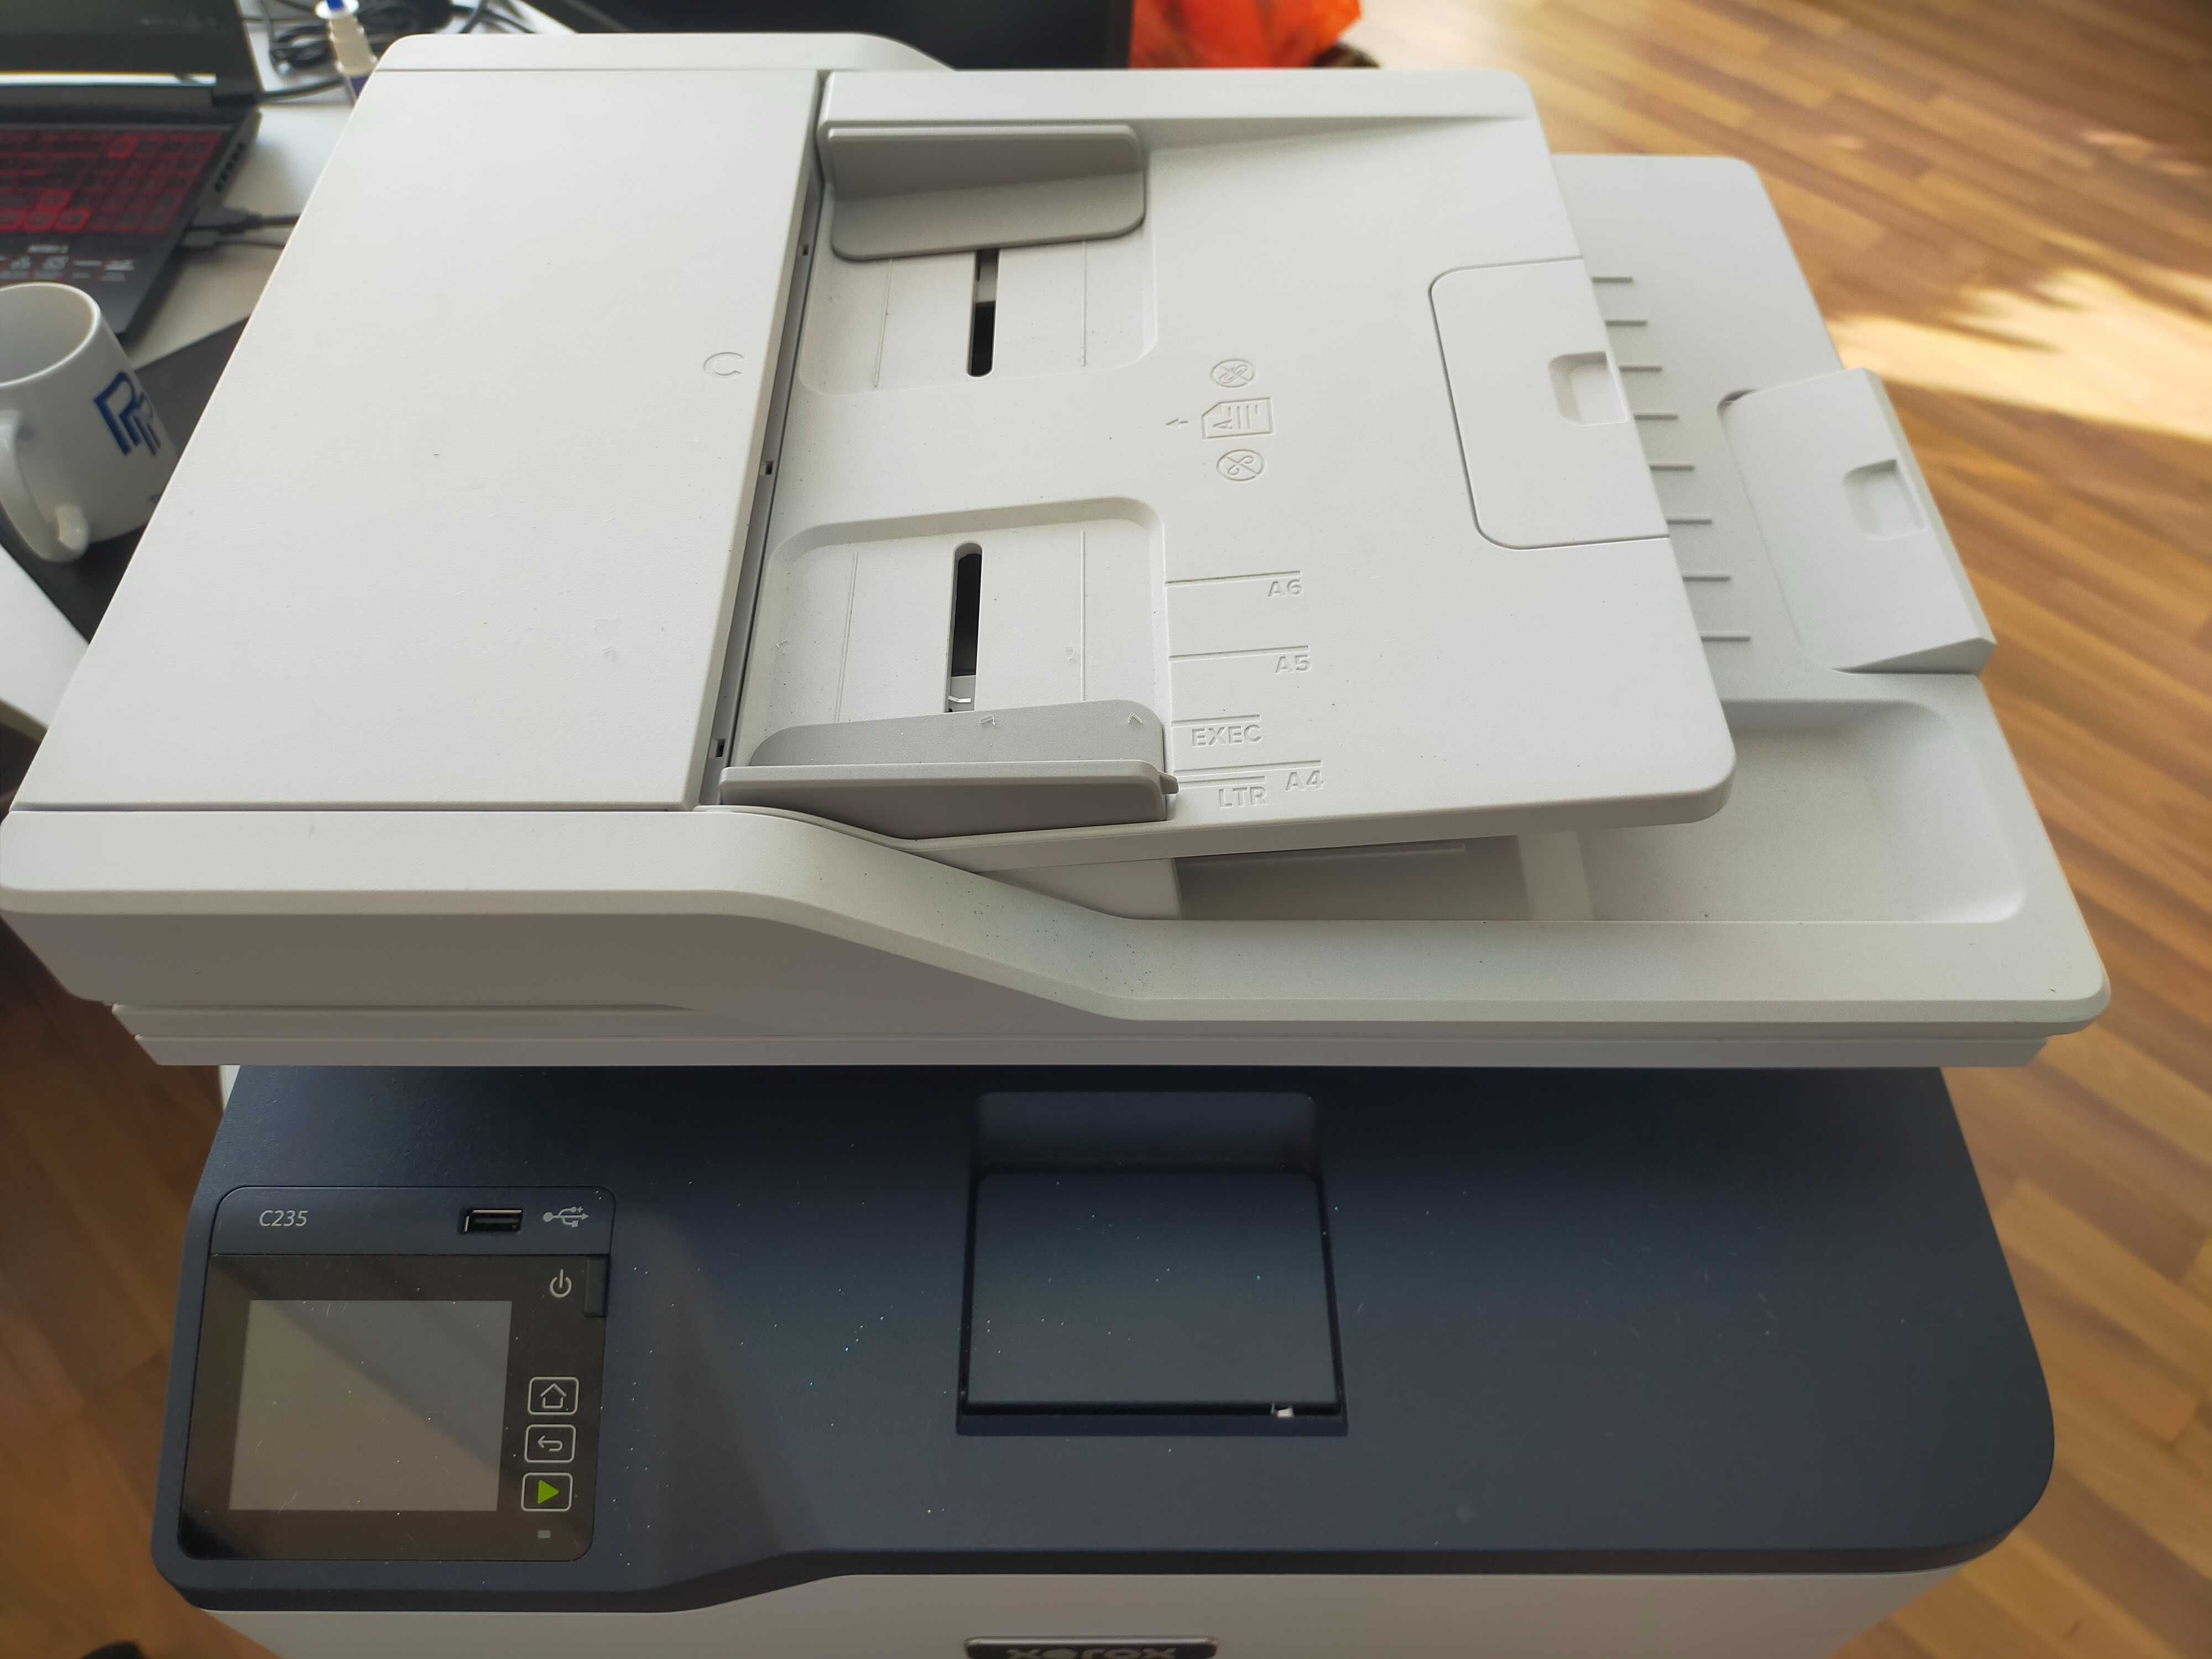 МФУ Xerox B225, A4, print 600x600dpi, scan 1200x1200dpi